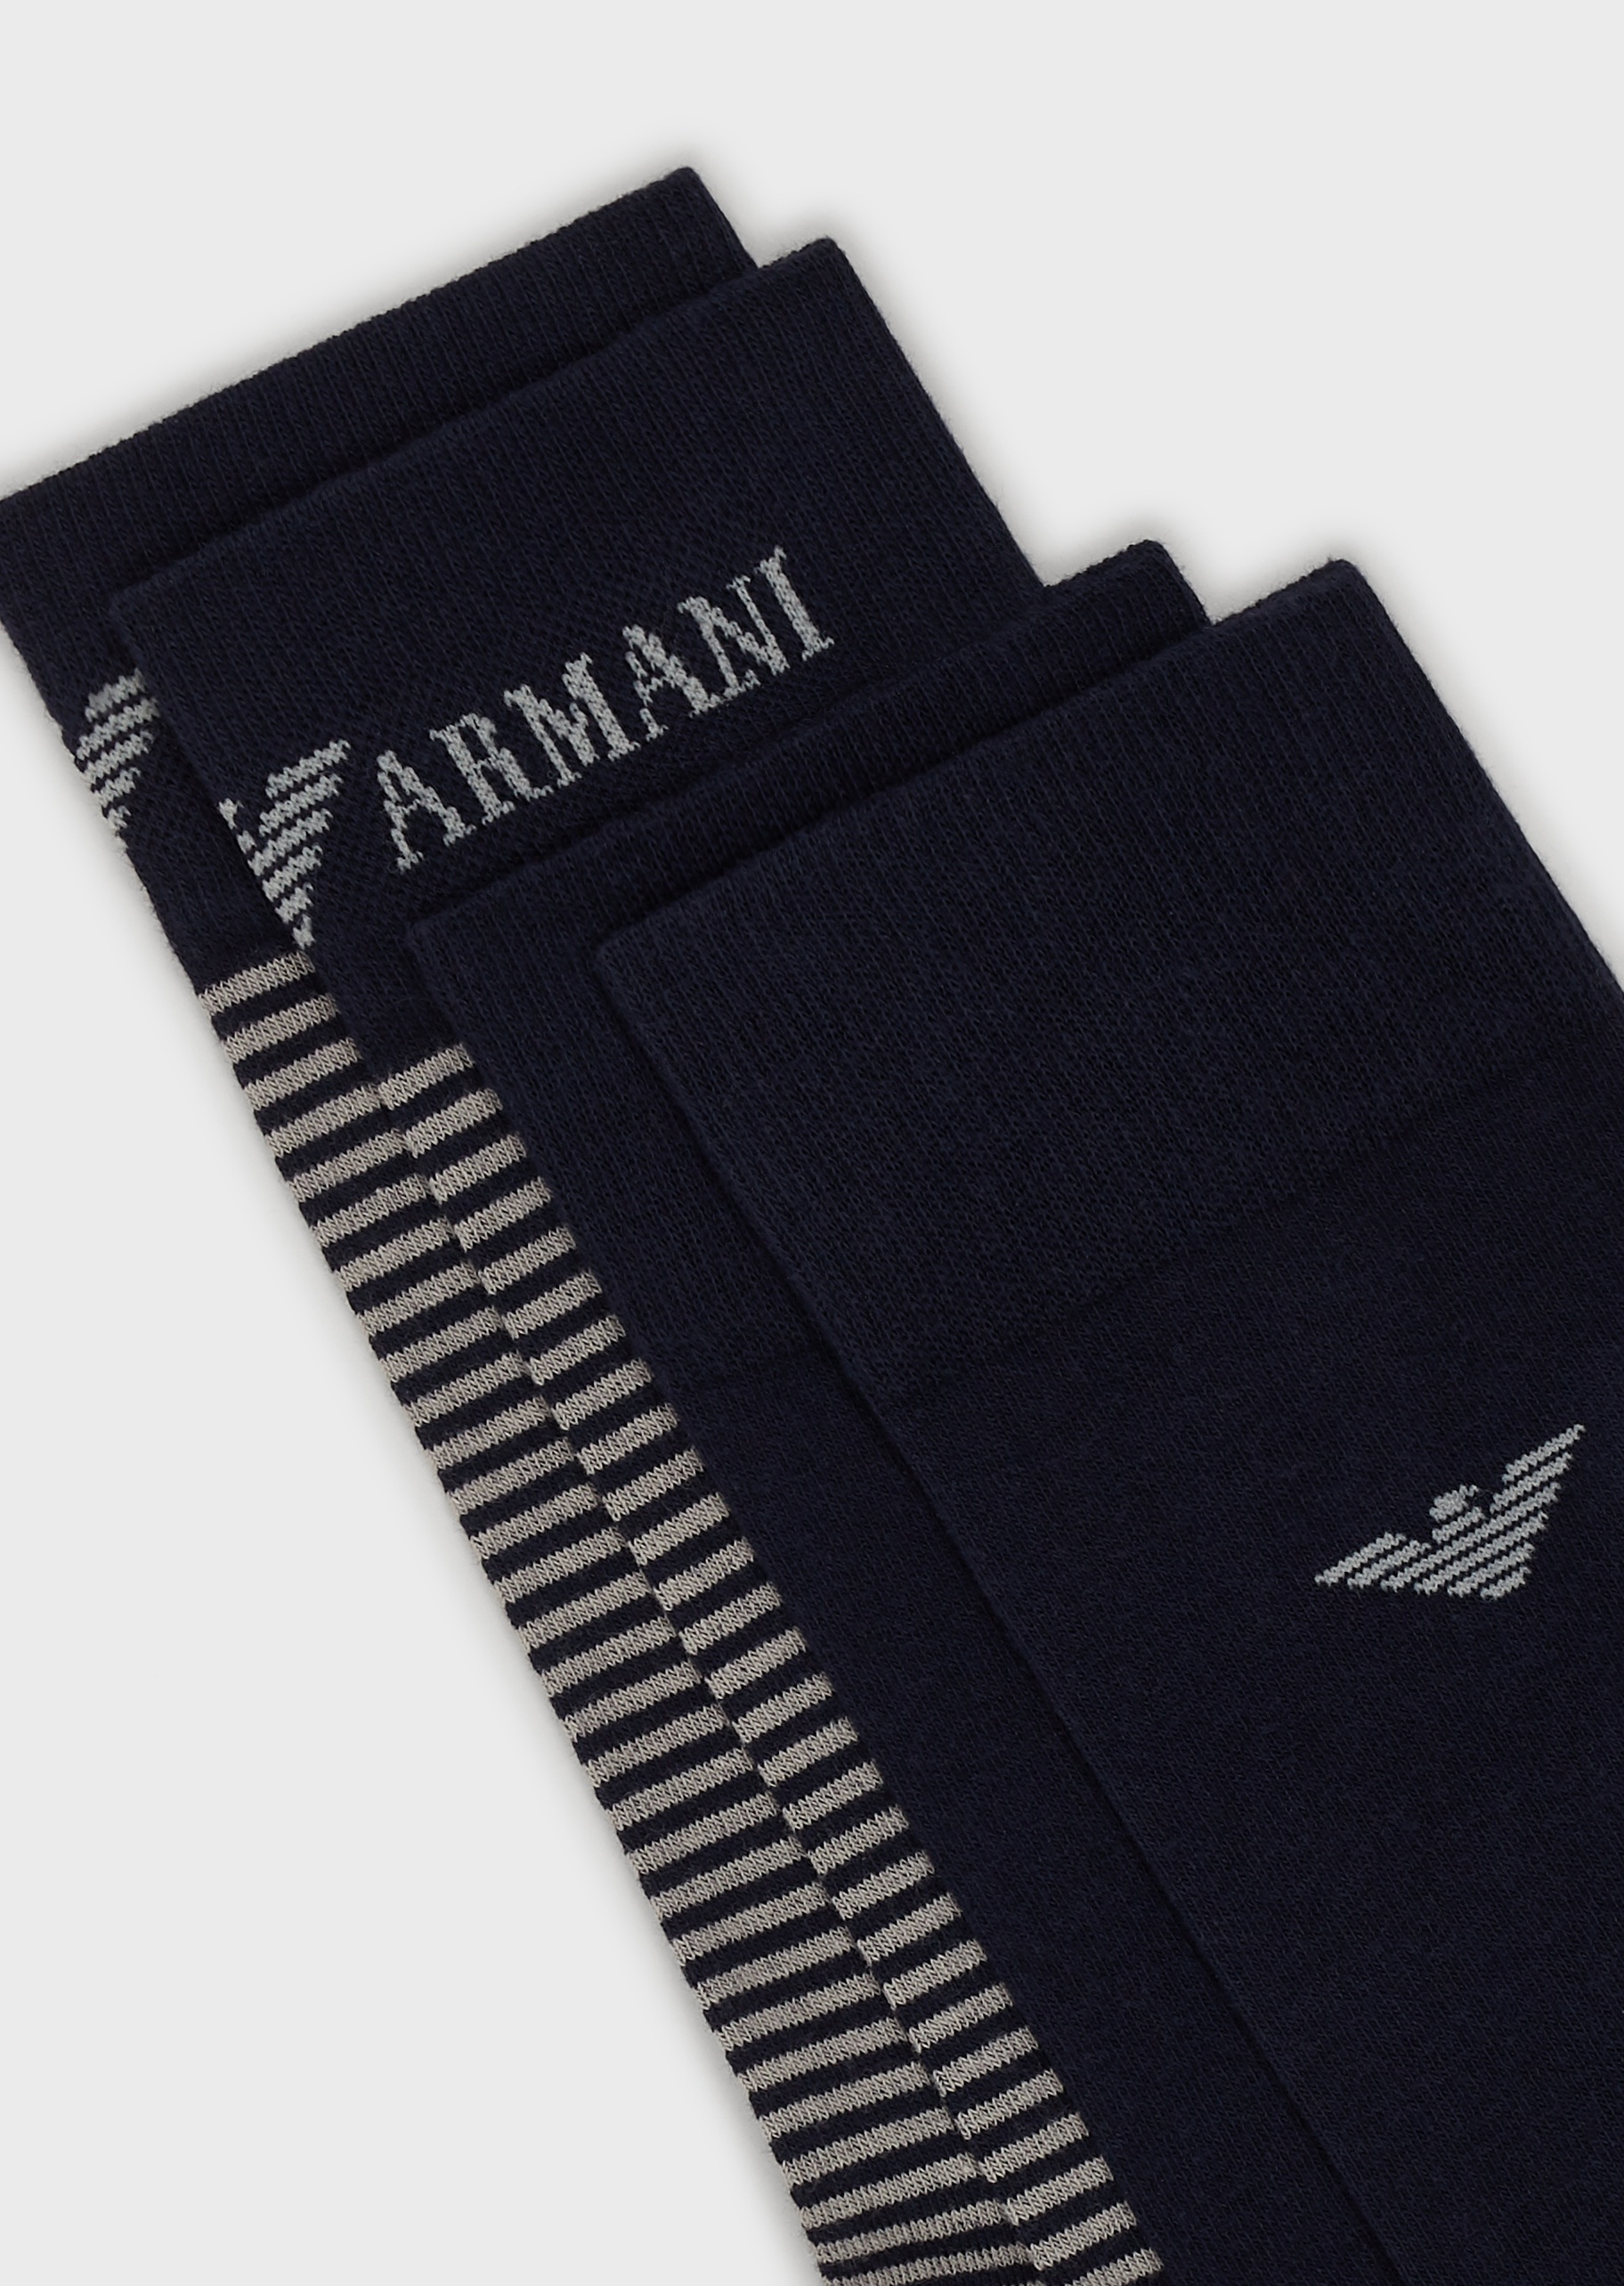 Emporio Armani LOGO袜子套装两件装